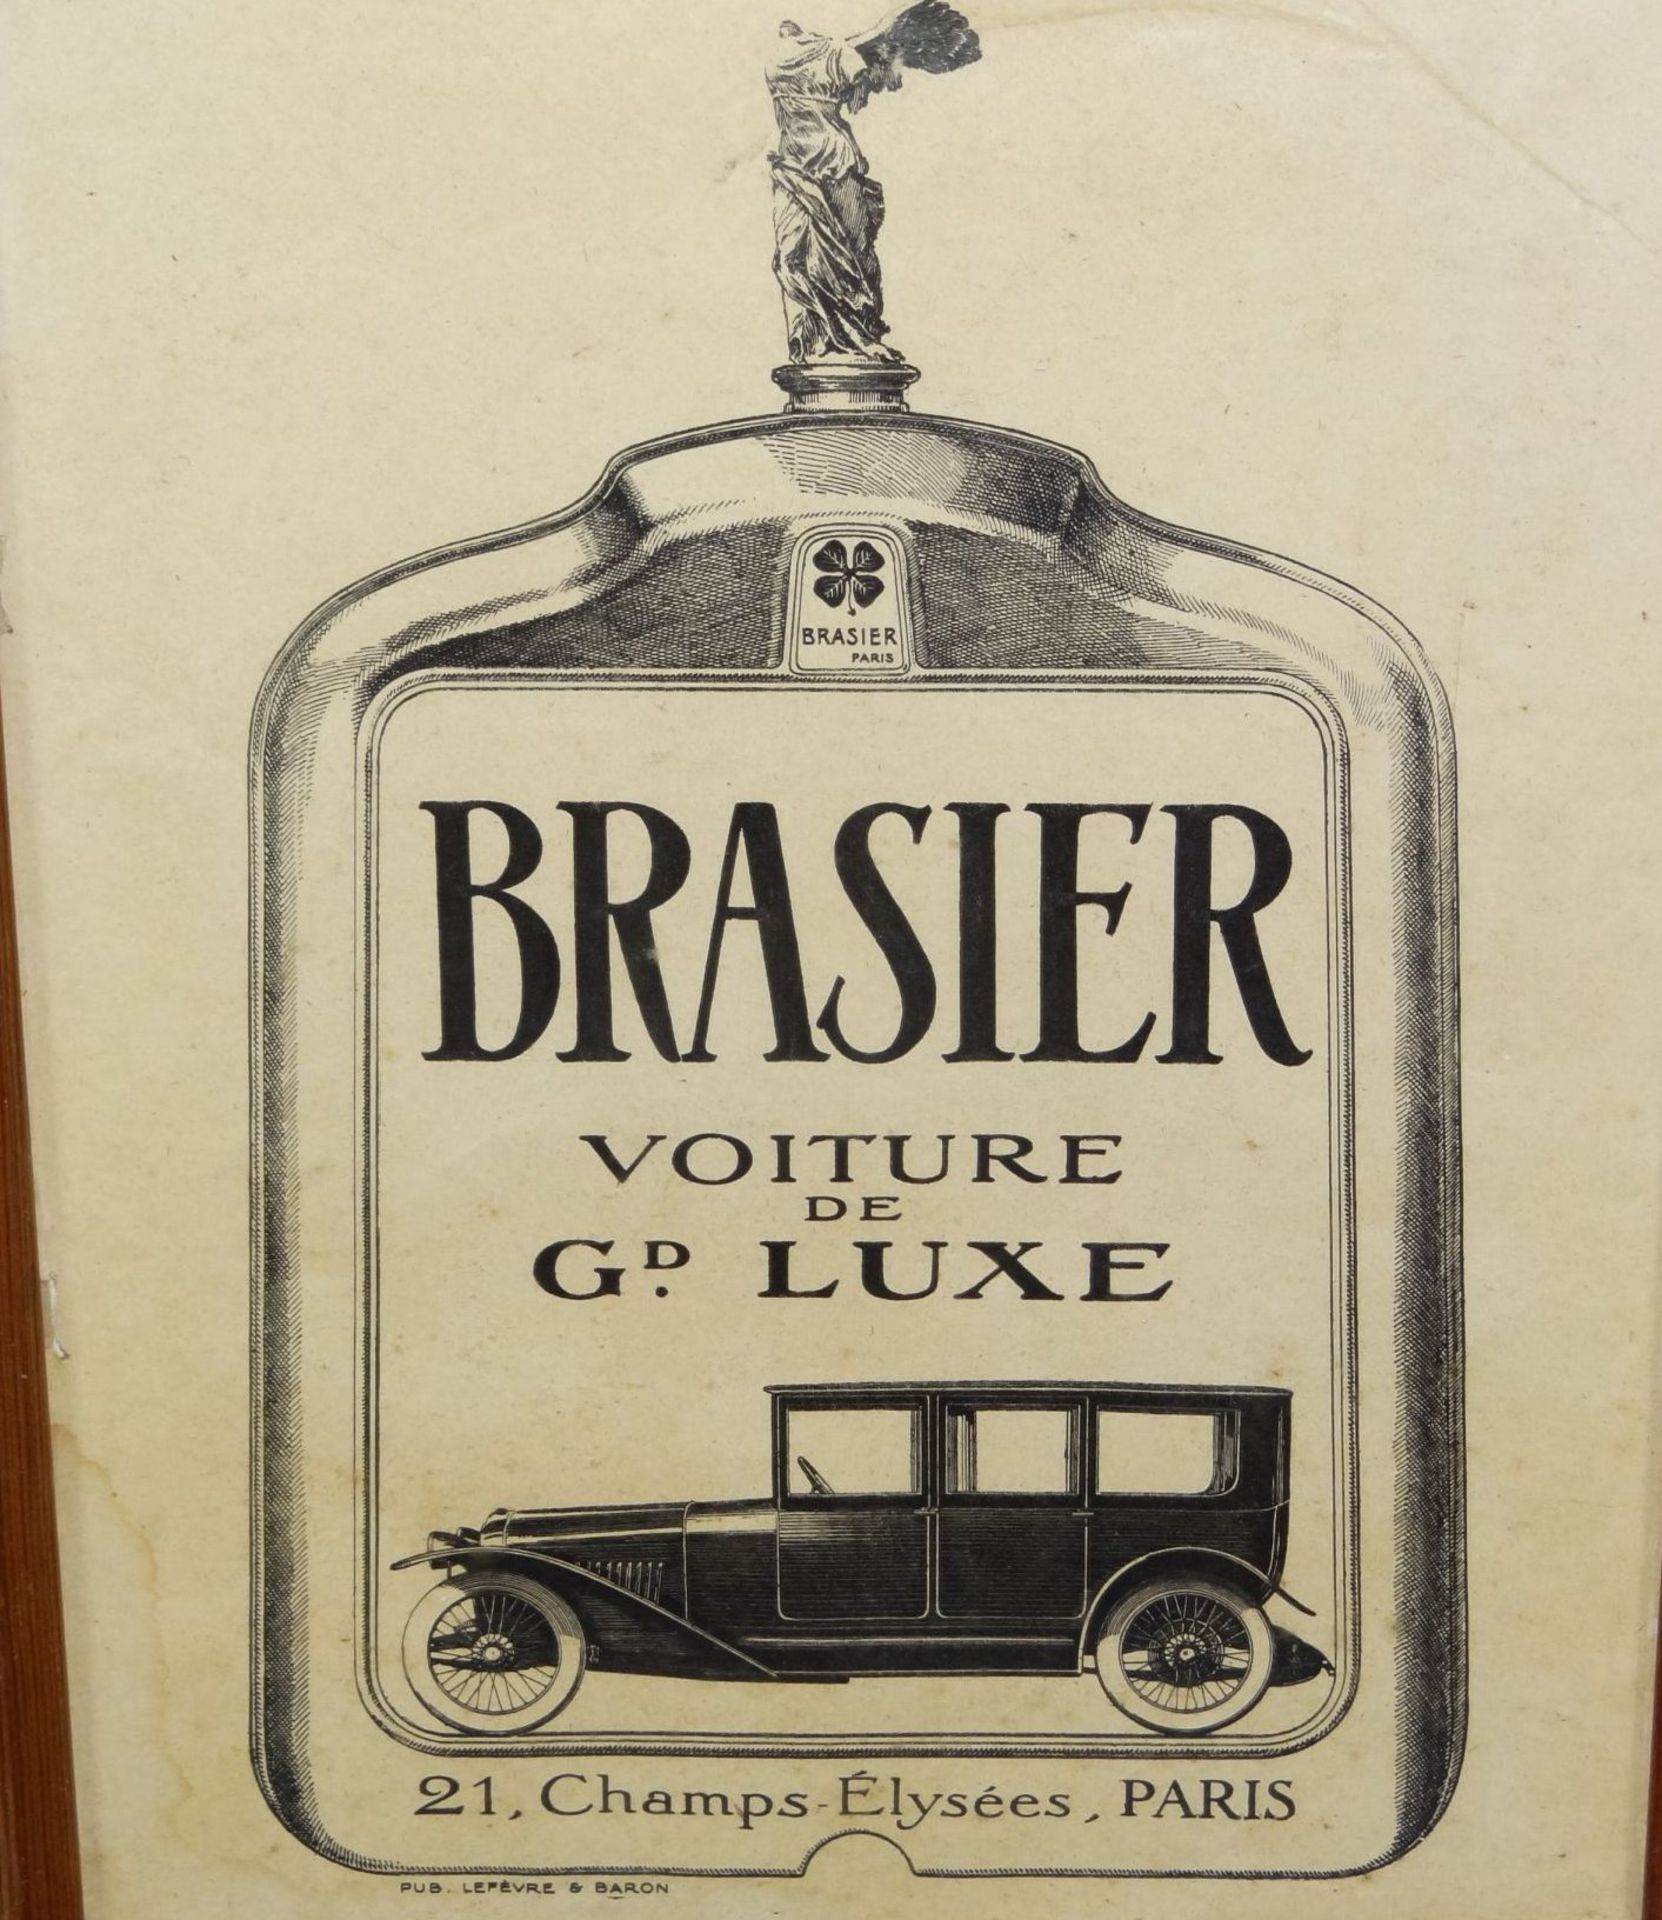 kleines Autoplakat "Brasier Voiture de Gd. Luxe" von 1904, ger/Glas, RG 42x32 cm, pub. Levebre& - Bild 2 aus 7